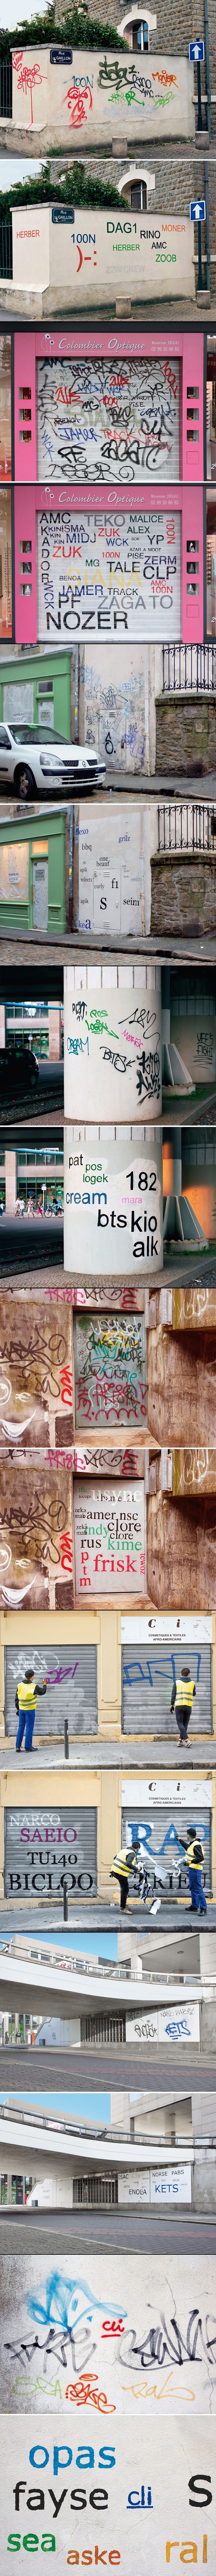 Genijalac slika preko odurnih grafitija da bi se dalo pročitati